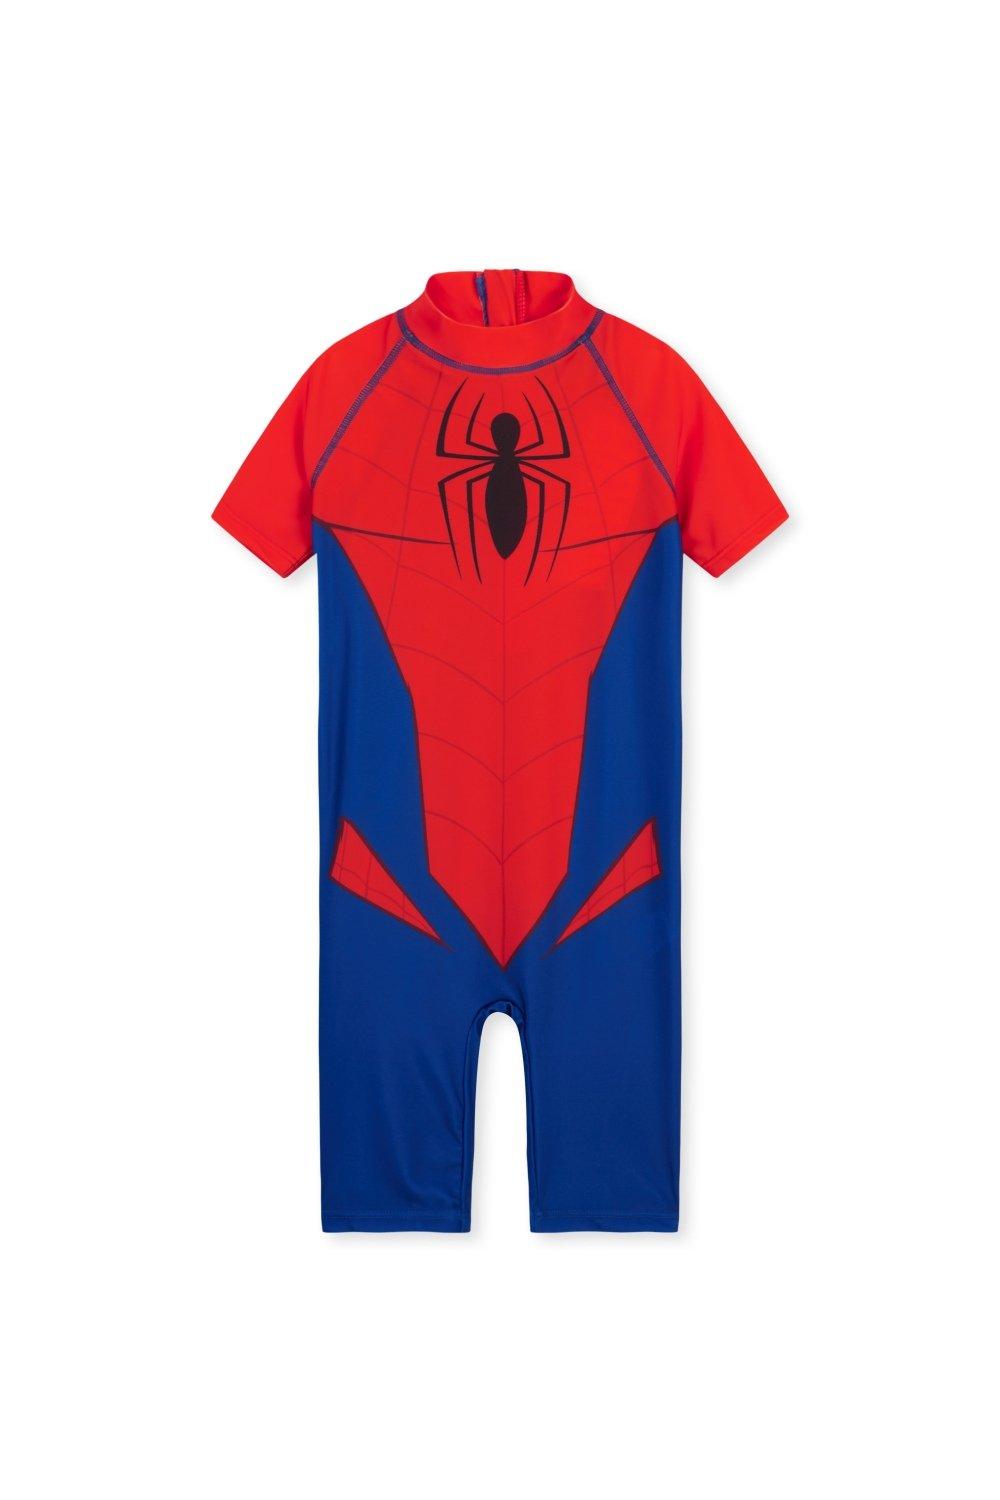 Купальник Человека-Паука с короткими рукавами Marvel, мультиколор футболка spiderman go webs go marvel серый